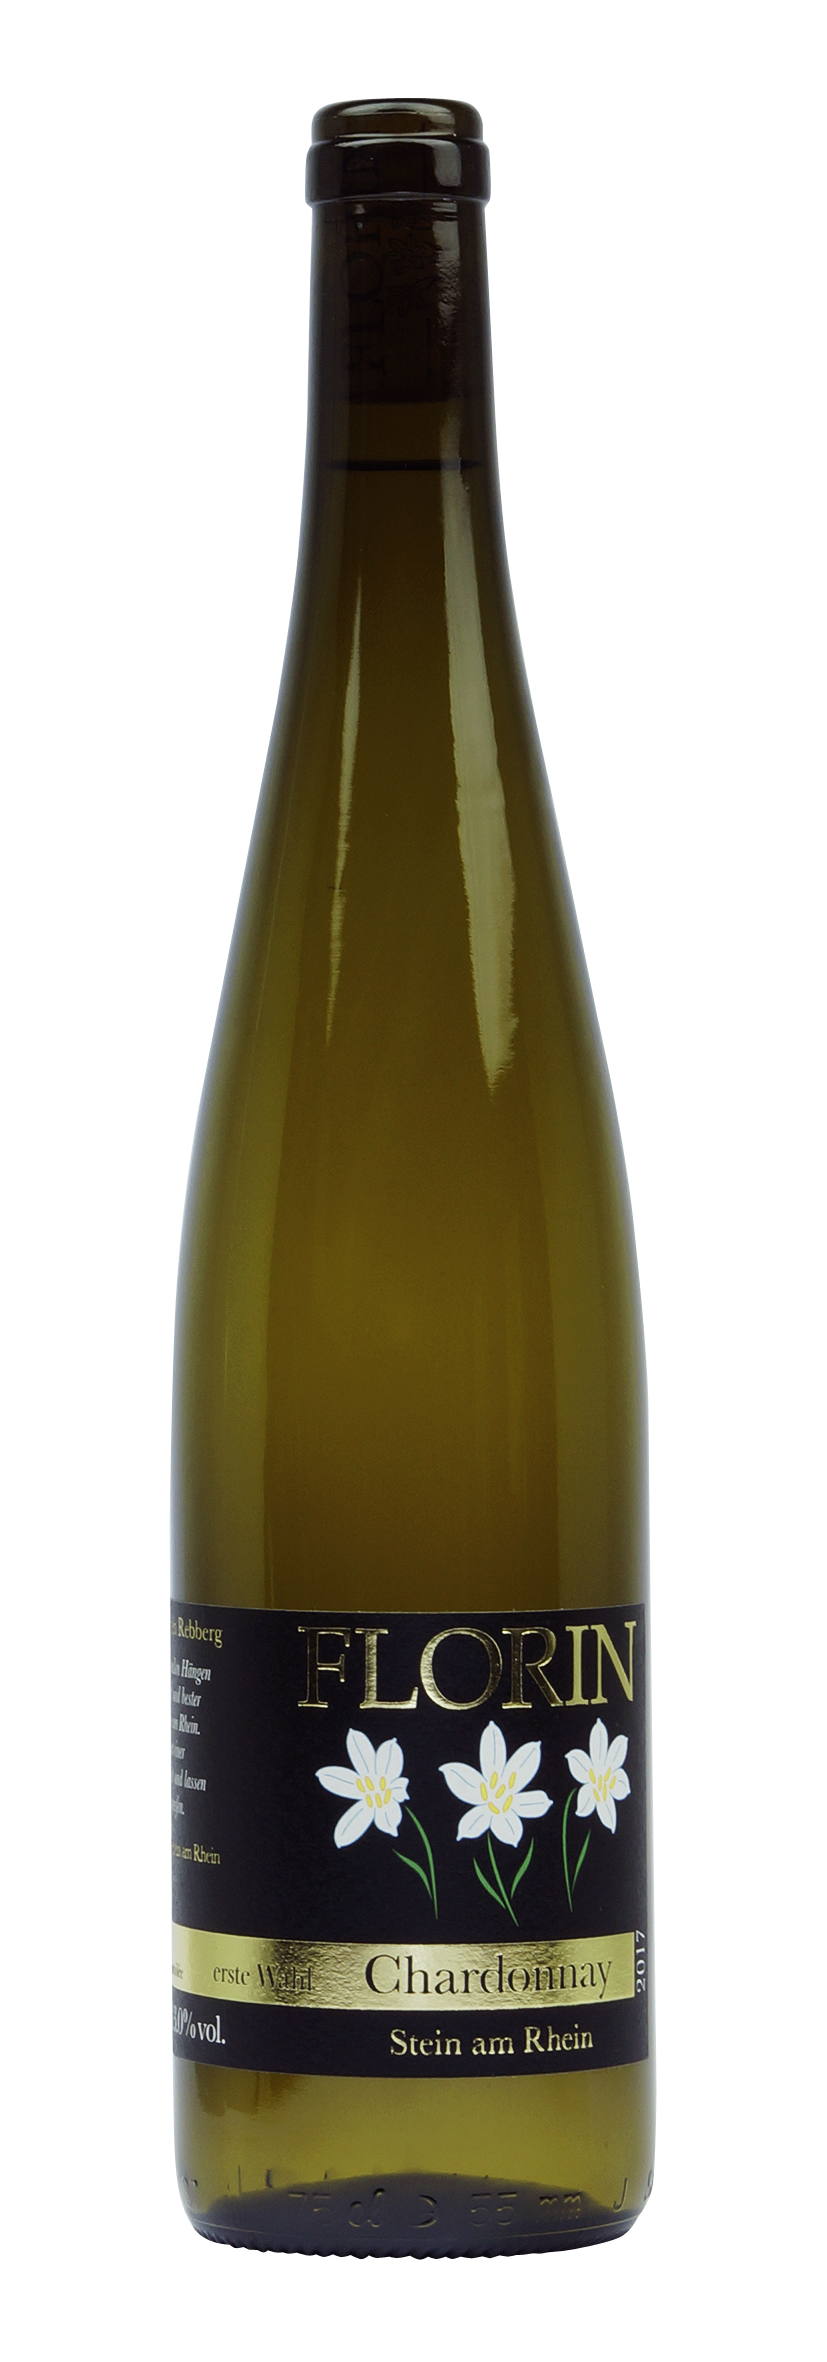 Schaffhausen AOC Chardonnay 2017